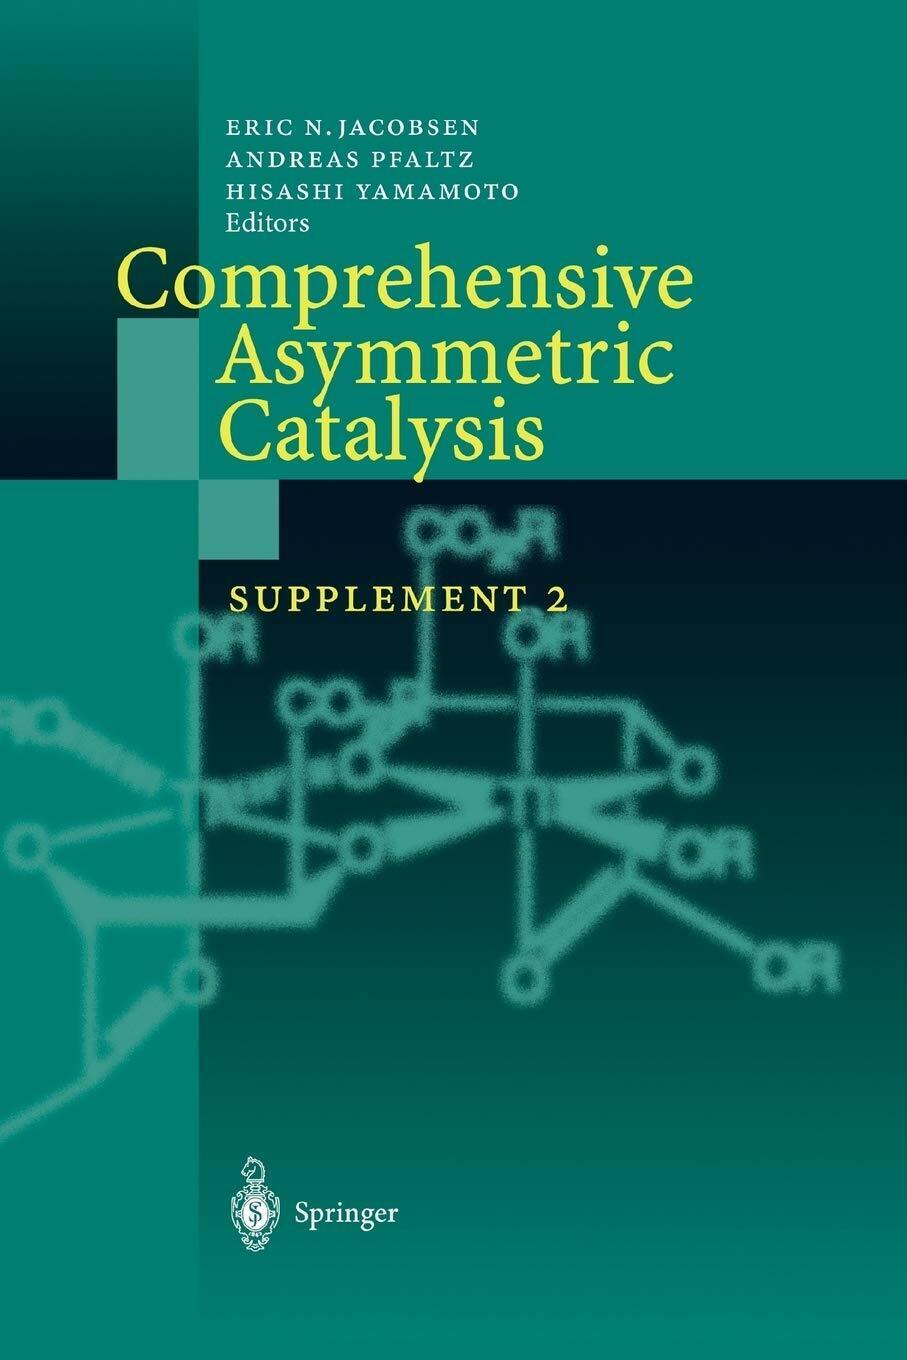 Comprehensive Asymmetric Catalysis - Eric N. Jacobsen - Springer, 2010 libro usato